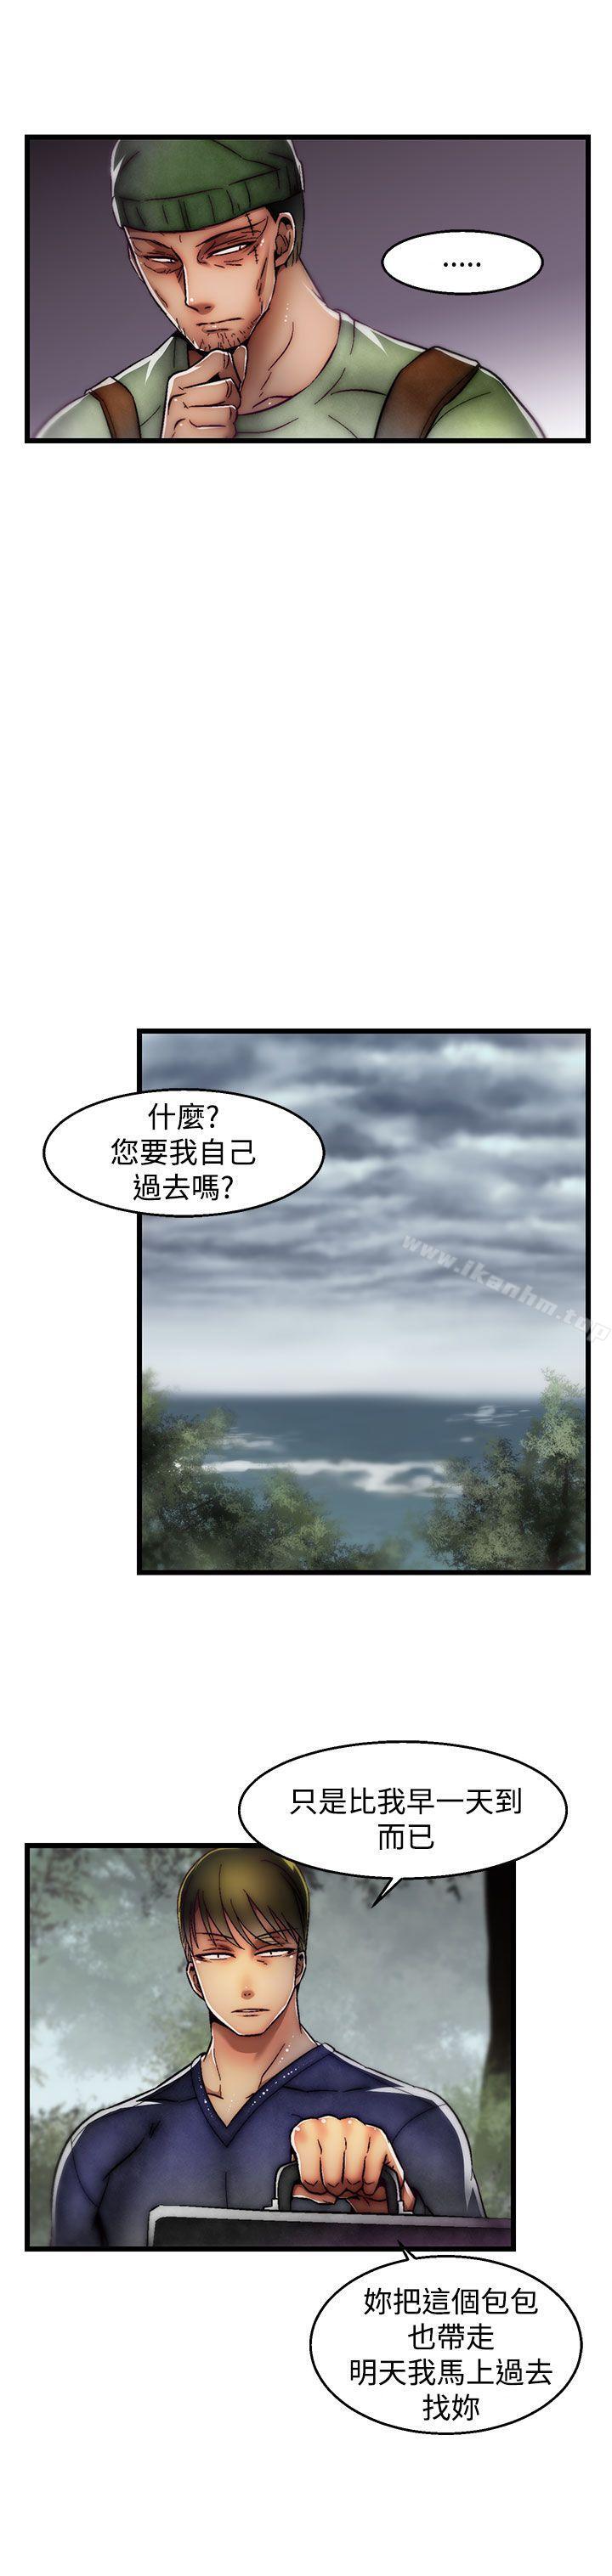 啪啪啪調教所漫画 免费阅读 第2季 最终话 13.jpg